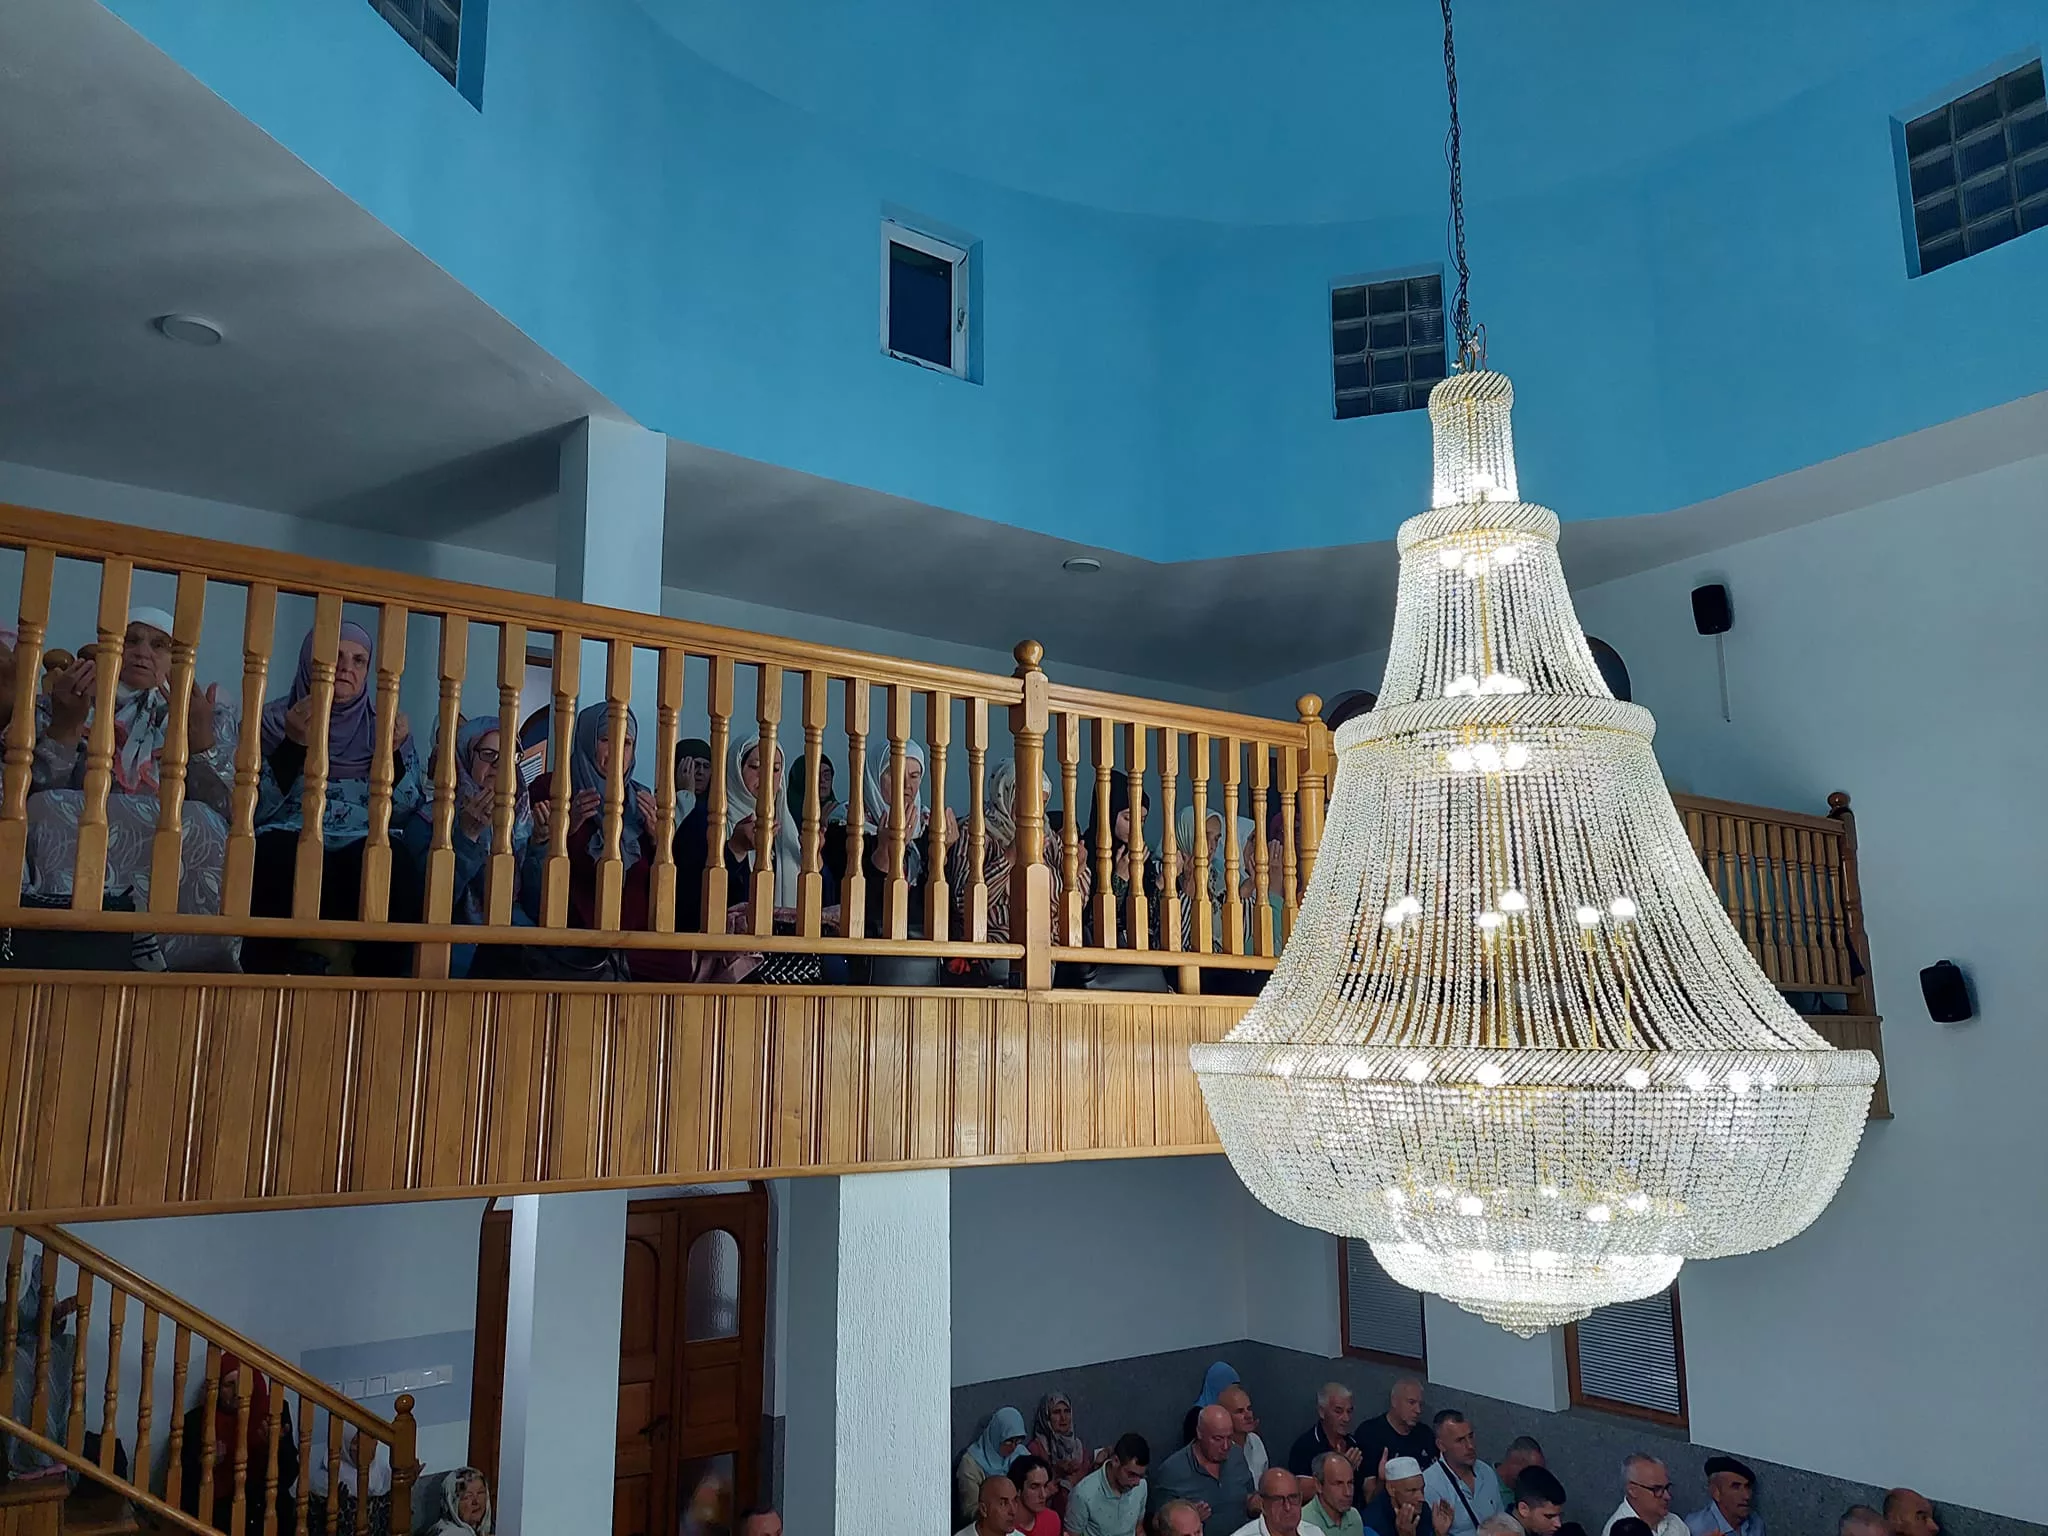 Džamija u Tršiću ispunjena do posljednjeg mjesta na mevludskoj svečanosti, ove nedjelje svečano otvorenje (FOTO)